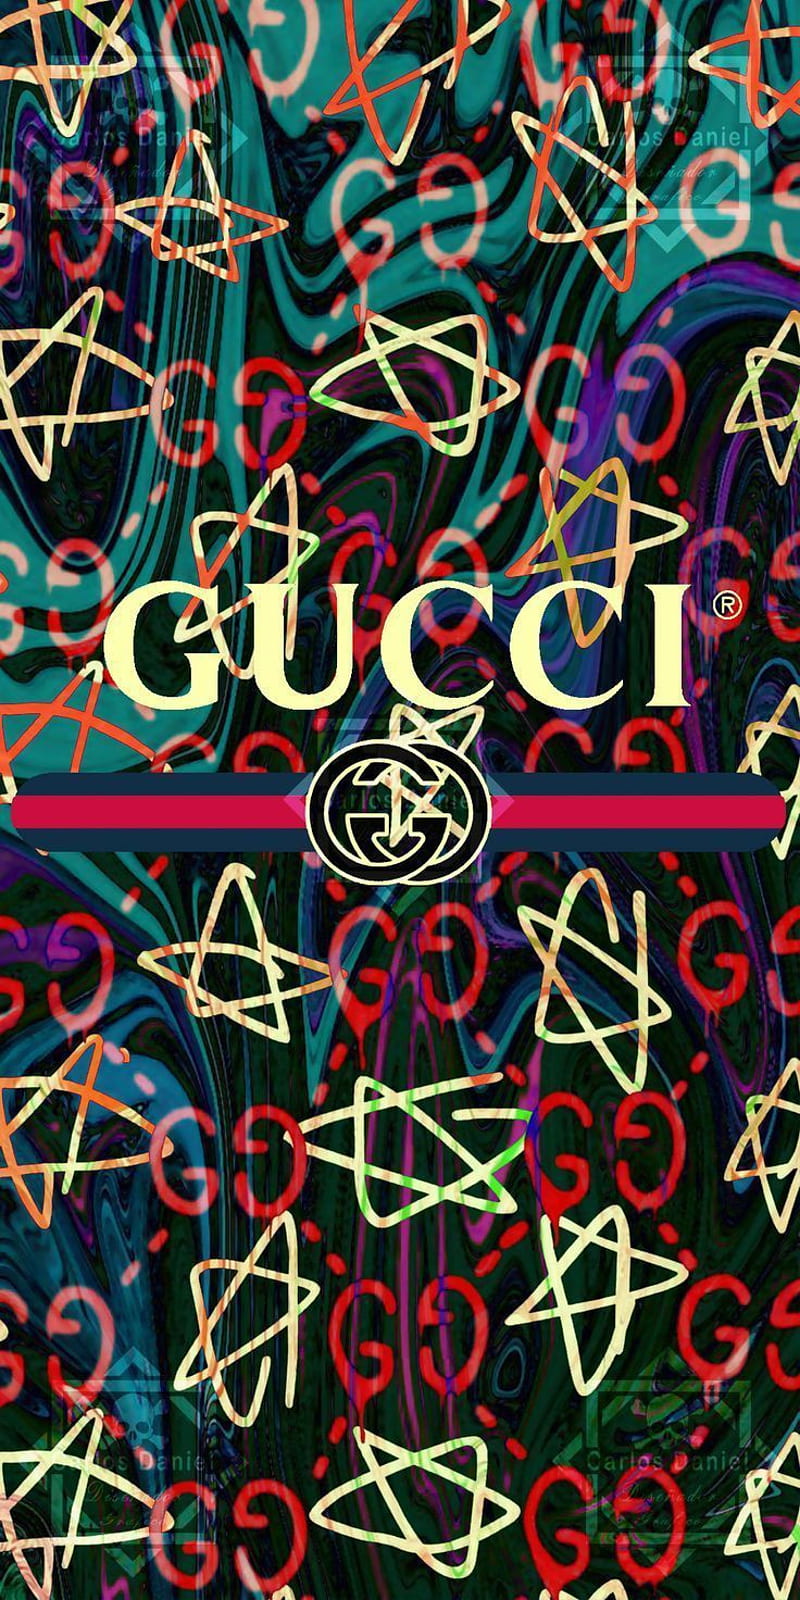 Nếu bạn là một tín đồ của thương hiệu Gucci, thì hình nền điện thoại Gucci là một sự lựa chọn hoàn hảo. Với chất liệu cao cấp, phong cách độc đáo, những thiết kế đầy sáng tạo, chắc chắn bạn sẽ không muốn bỏ lỡ chúng. Hãy trang trí cho chiếc điện thoại của bạn trở nên độc đáo và nổi bật hơn. 